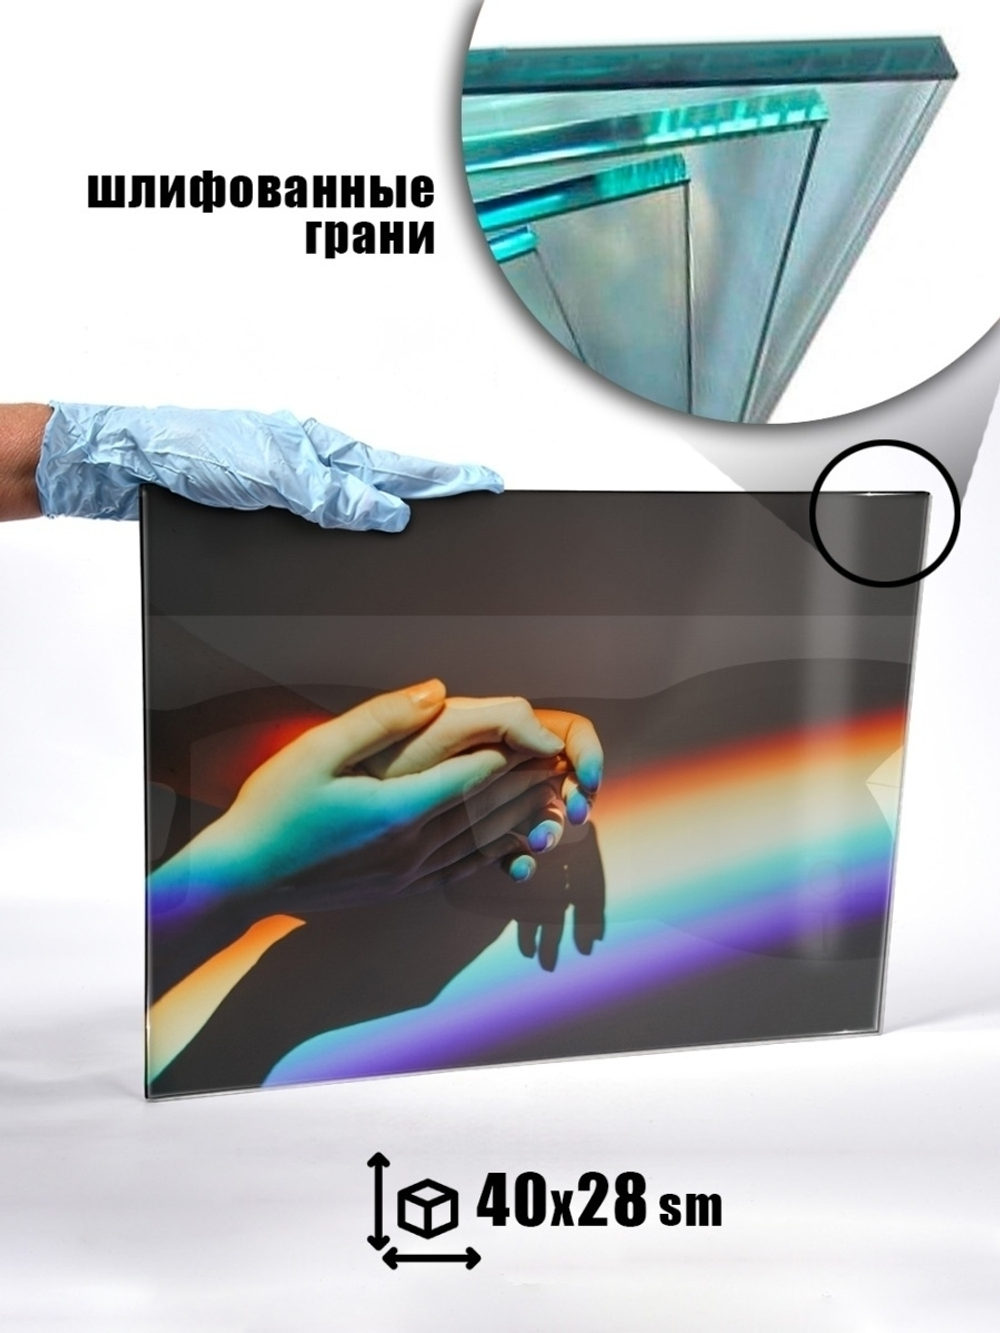 Модульная стеклянная интерьерная картина / Фотокартина на стекле / Радужные руки, 28x40 см. Декор для дома, подарок